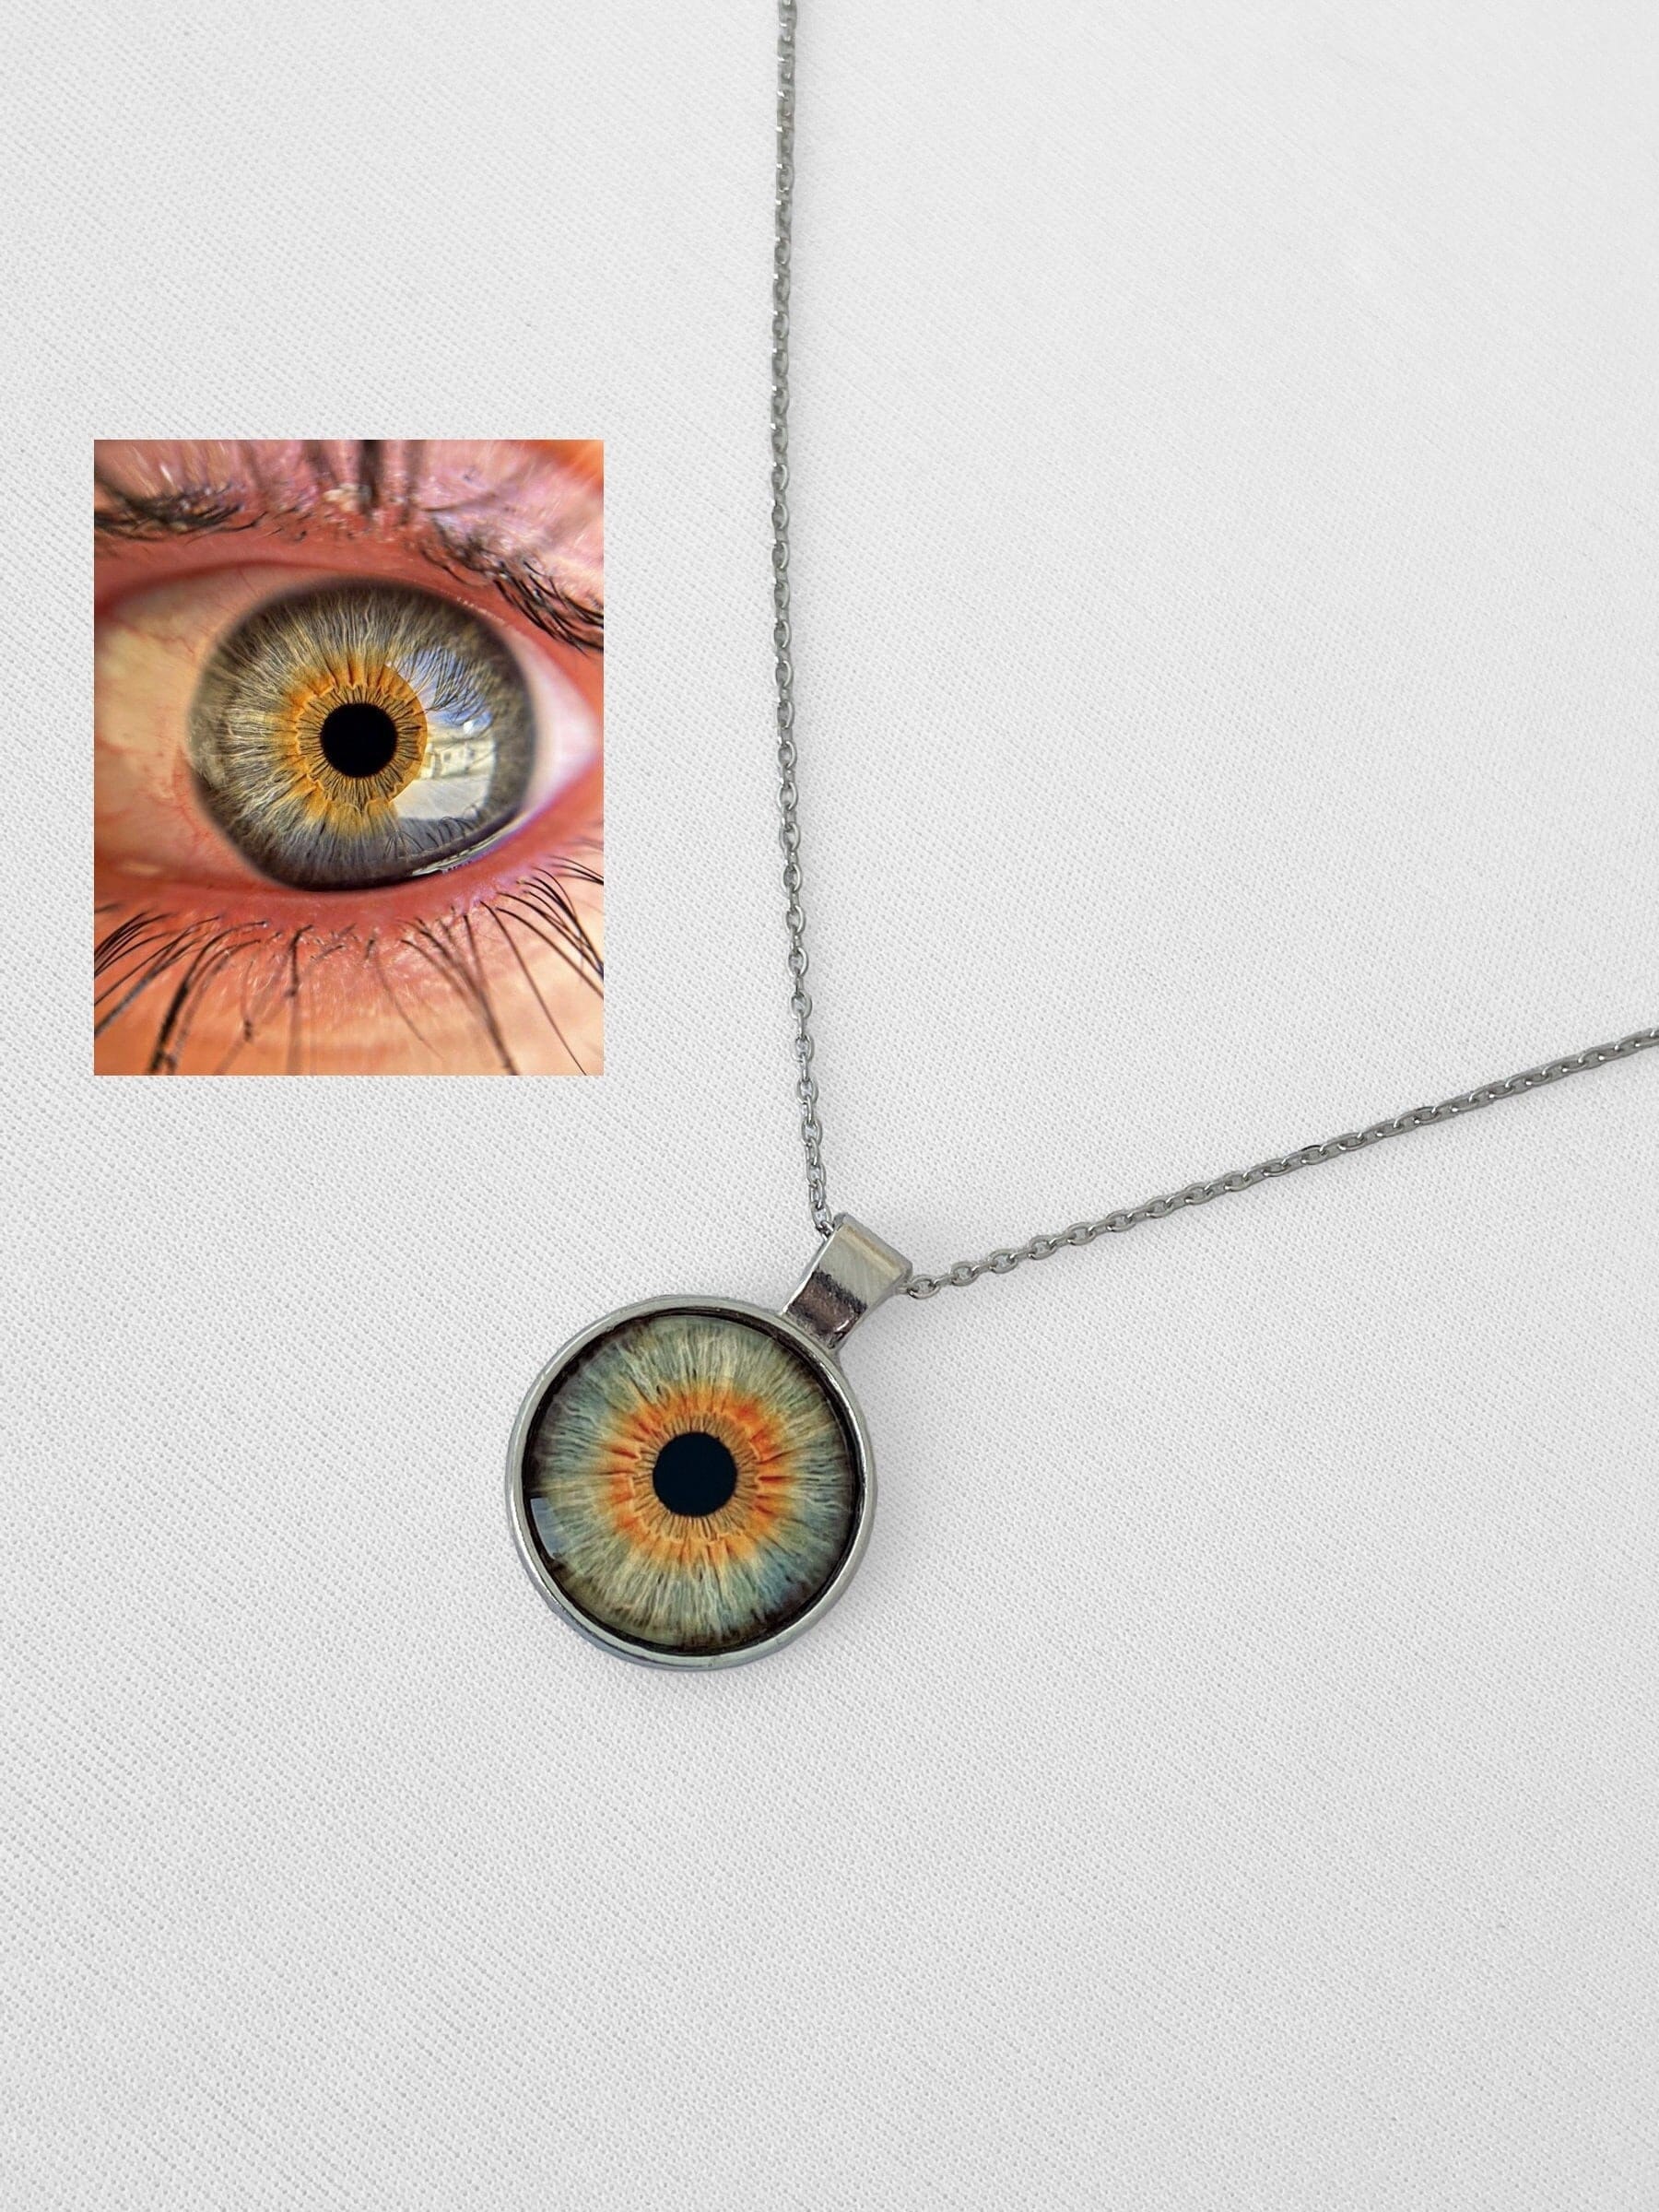 Eye Necklace Personalized Eye Iris Necklace